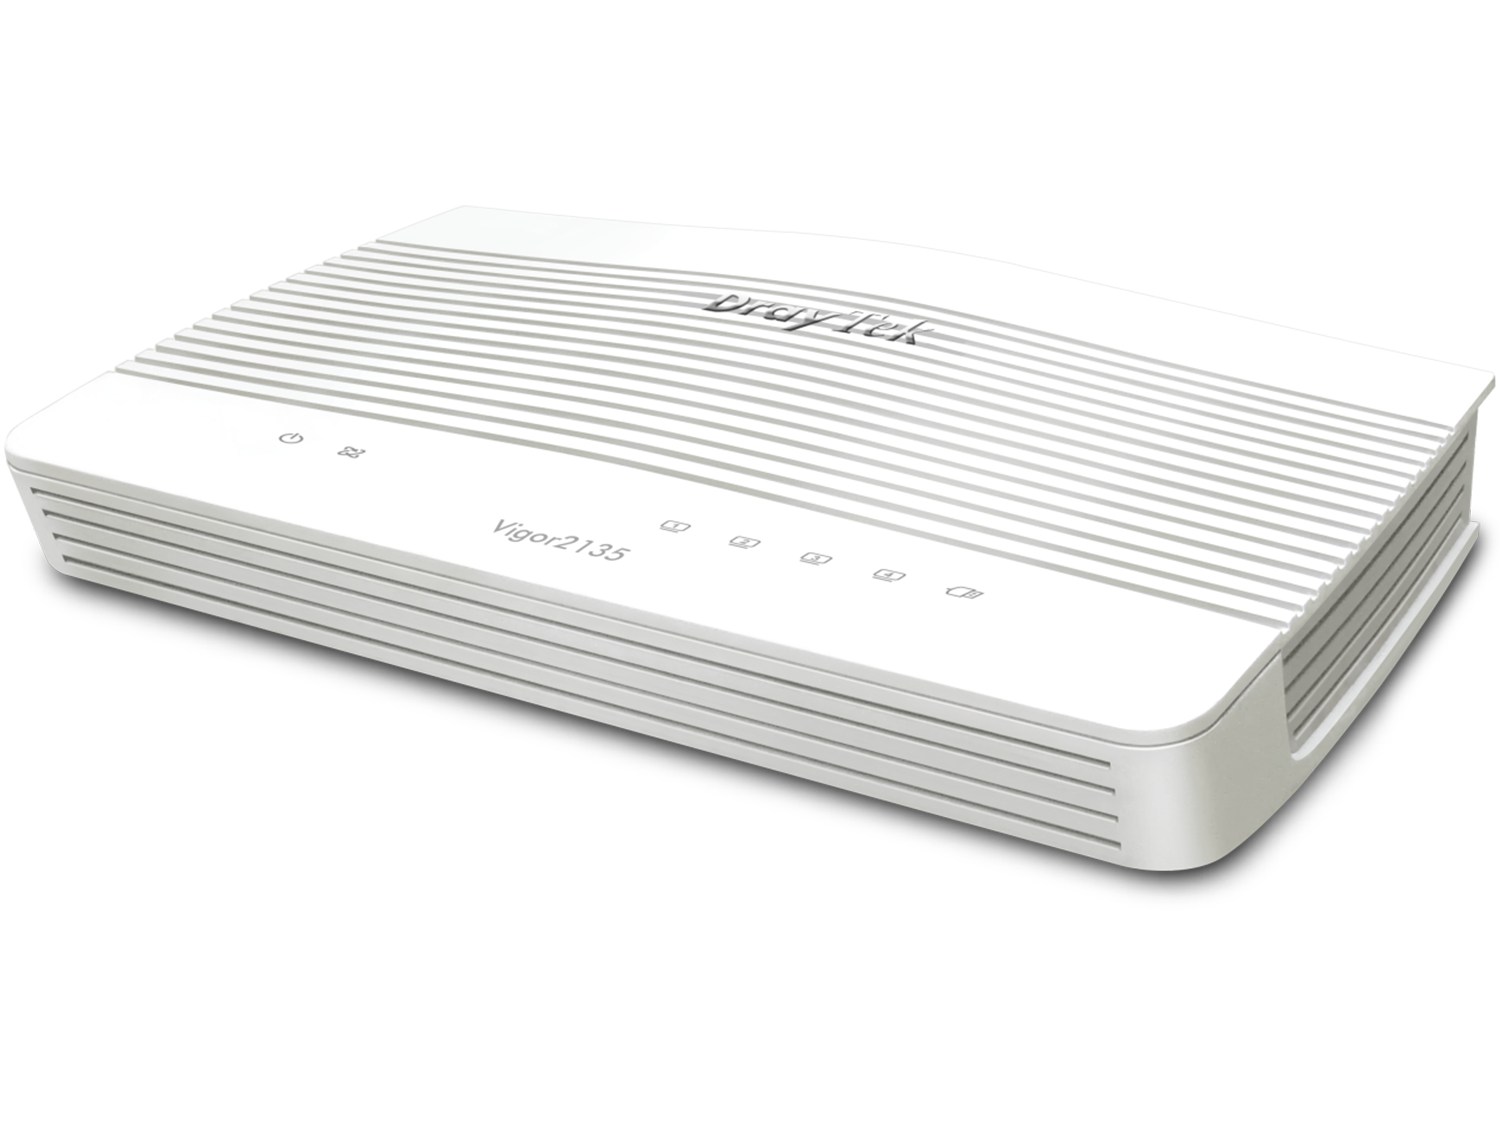 DrayTek Vigor2135 - Gigabit Broadband Single-WAN Router for Home/SOHO